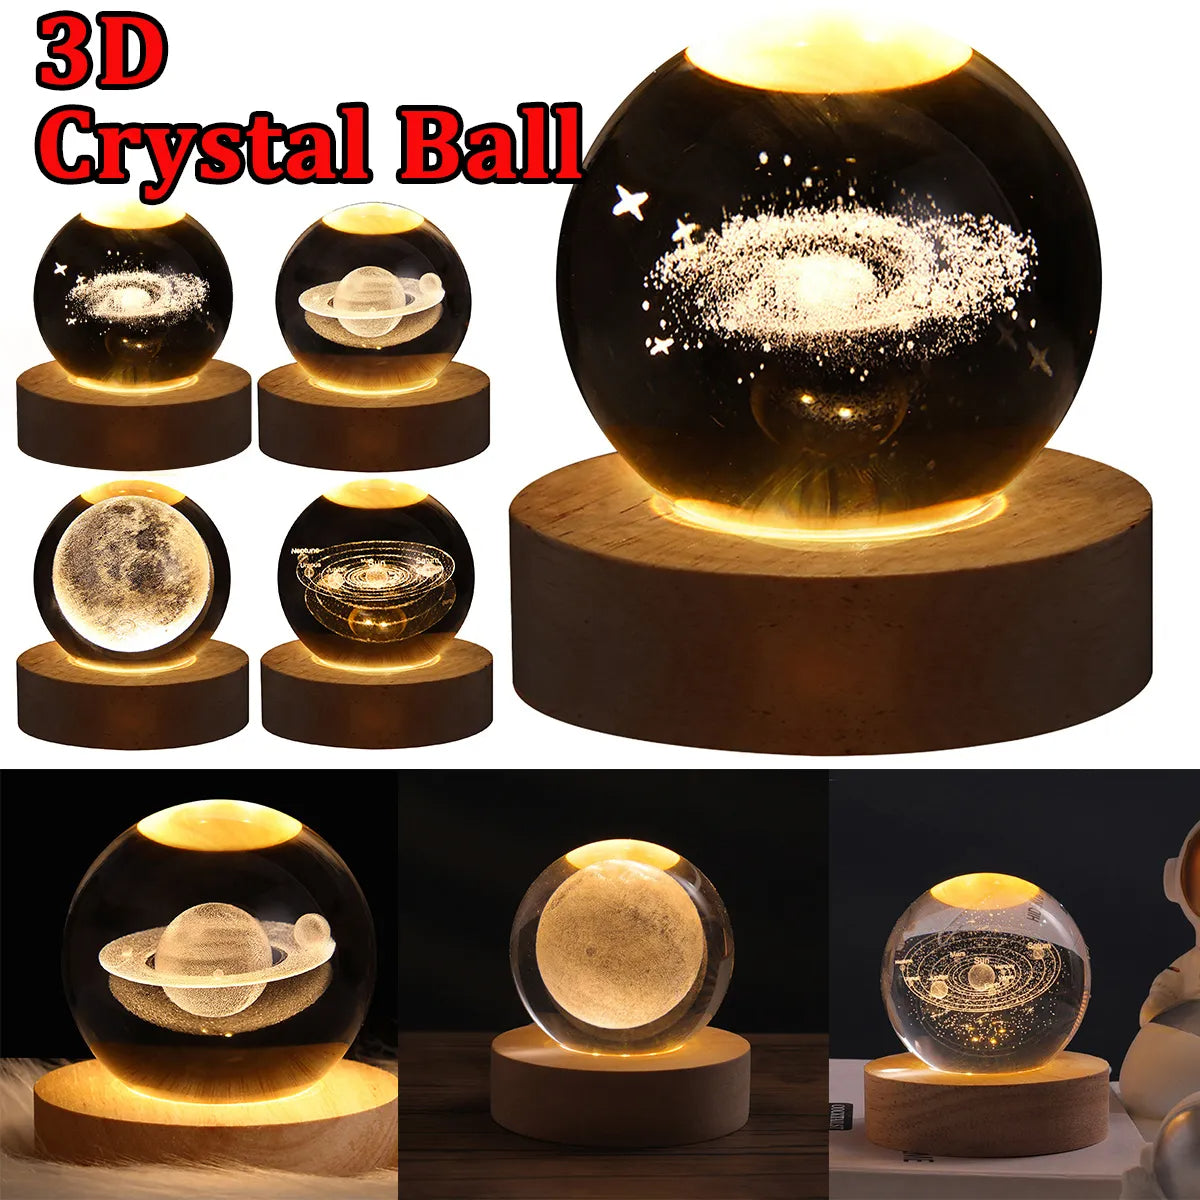 Crystal Ball™